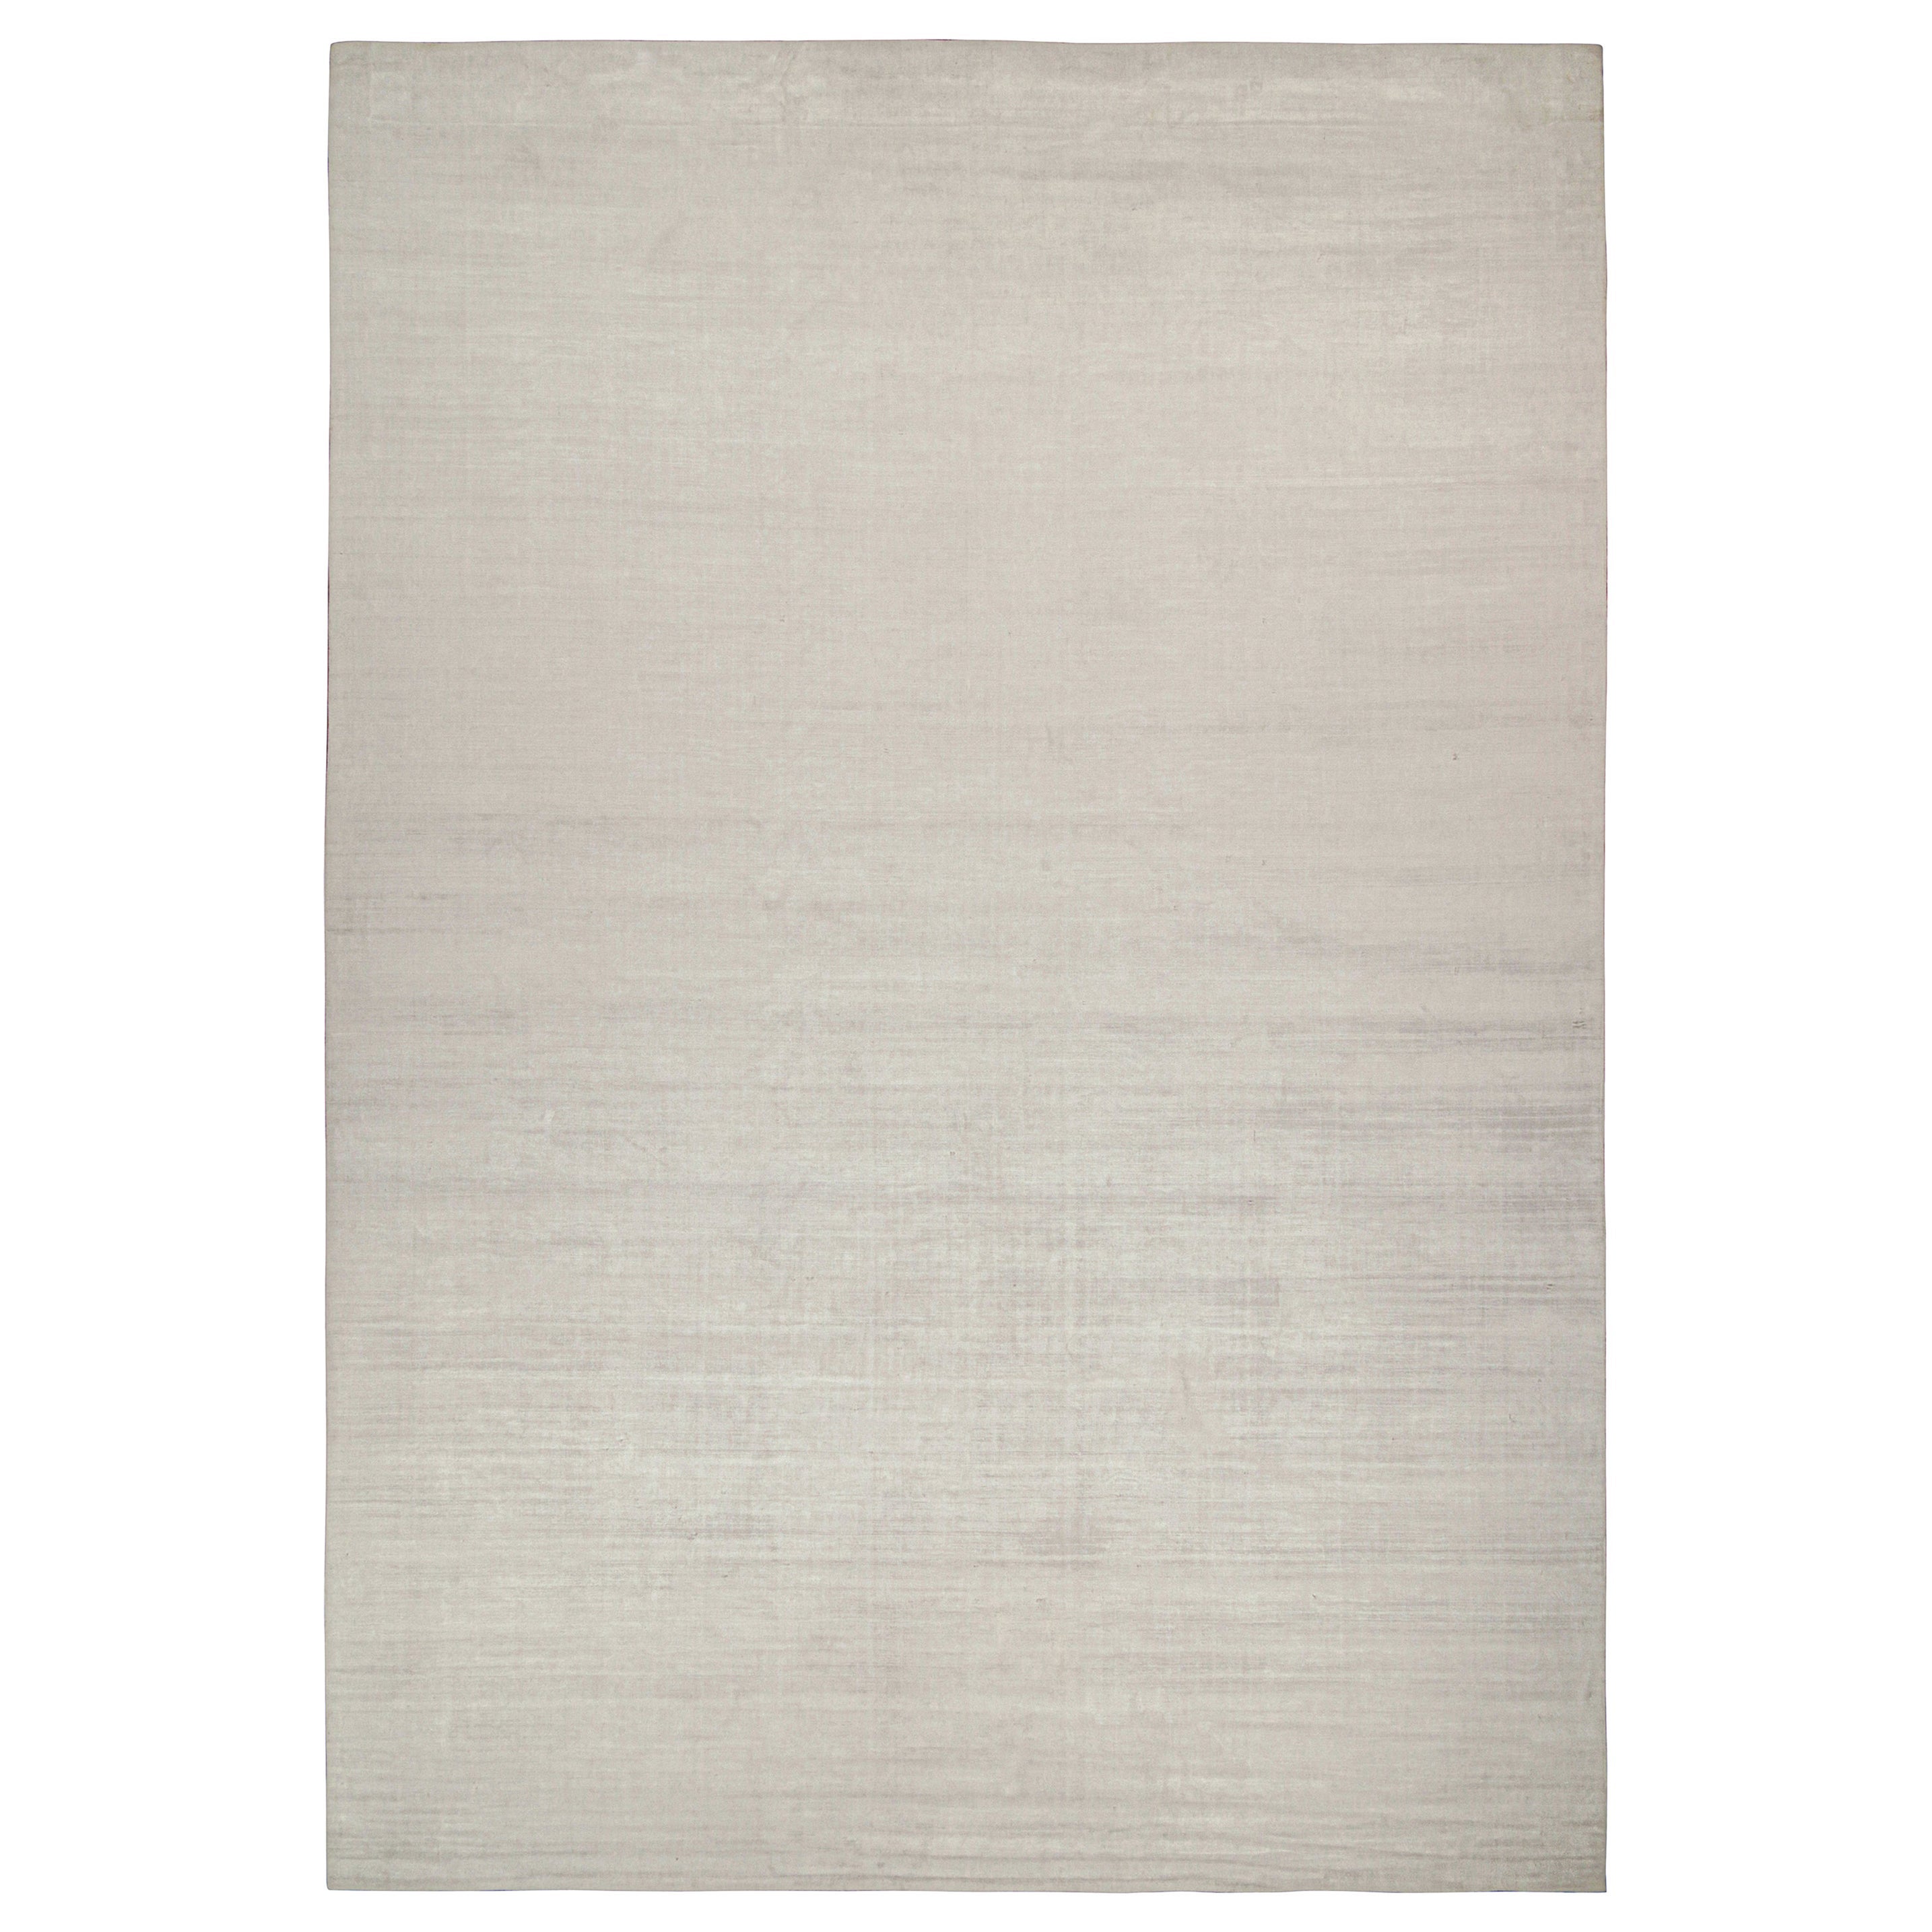 Rug & Kilims schlichter, moderner Teppich in massivem Silber und Off-White Ton-in-Ton